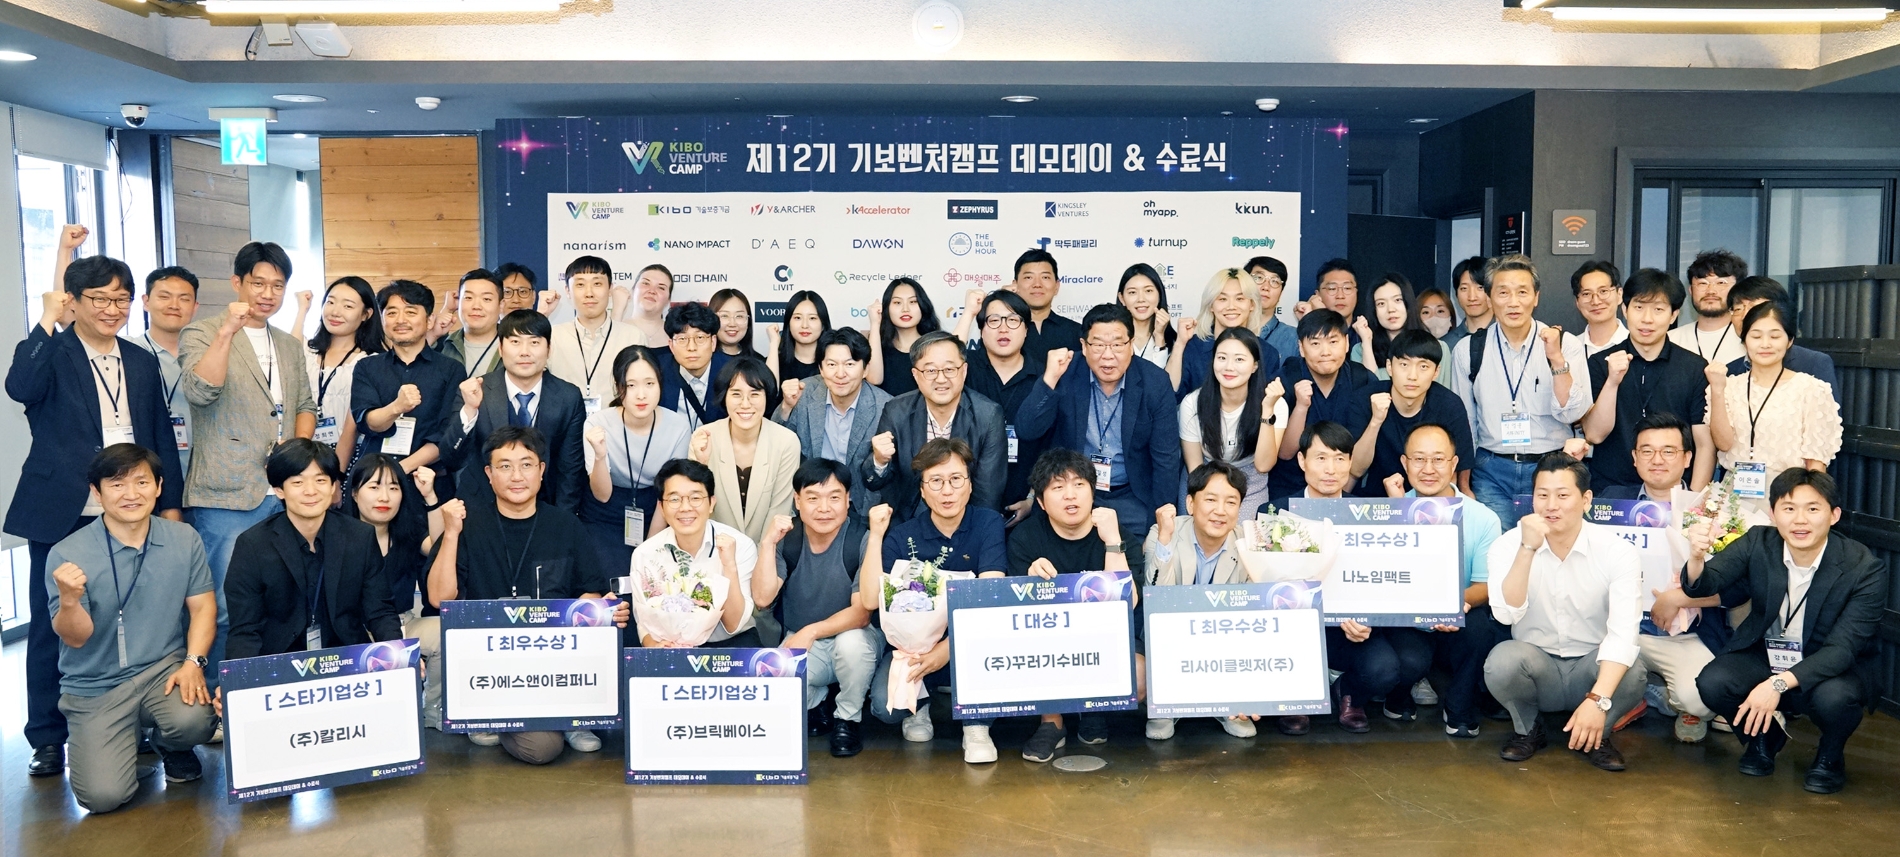 기술보증기금이 지난 23일 서울 강남구 소재 디캠프에서 제12기 기보벤처캠프 통합 데모데이를 개최했다. /사진제공=기술보증기금